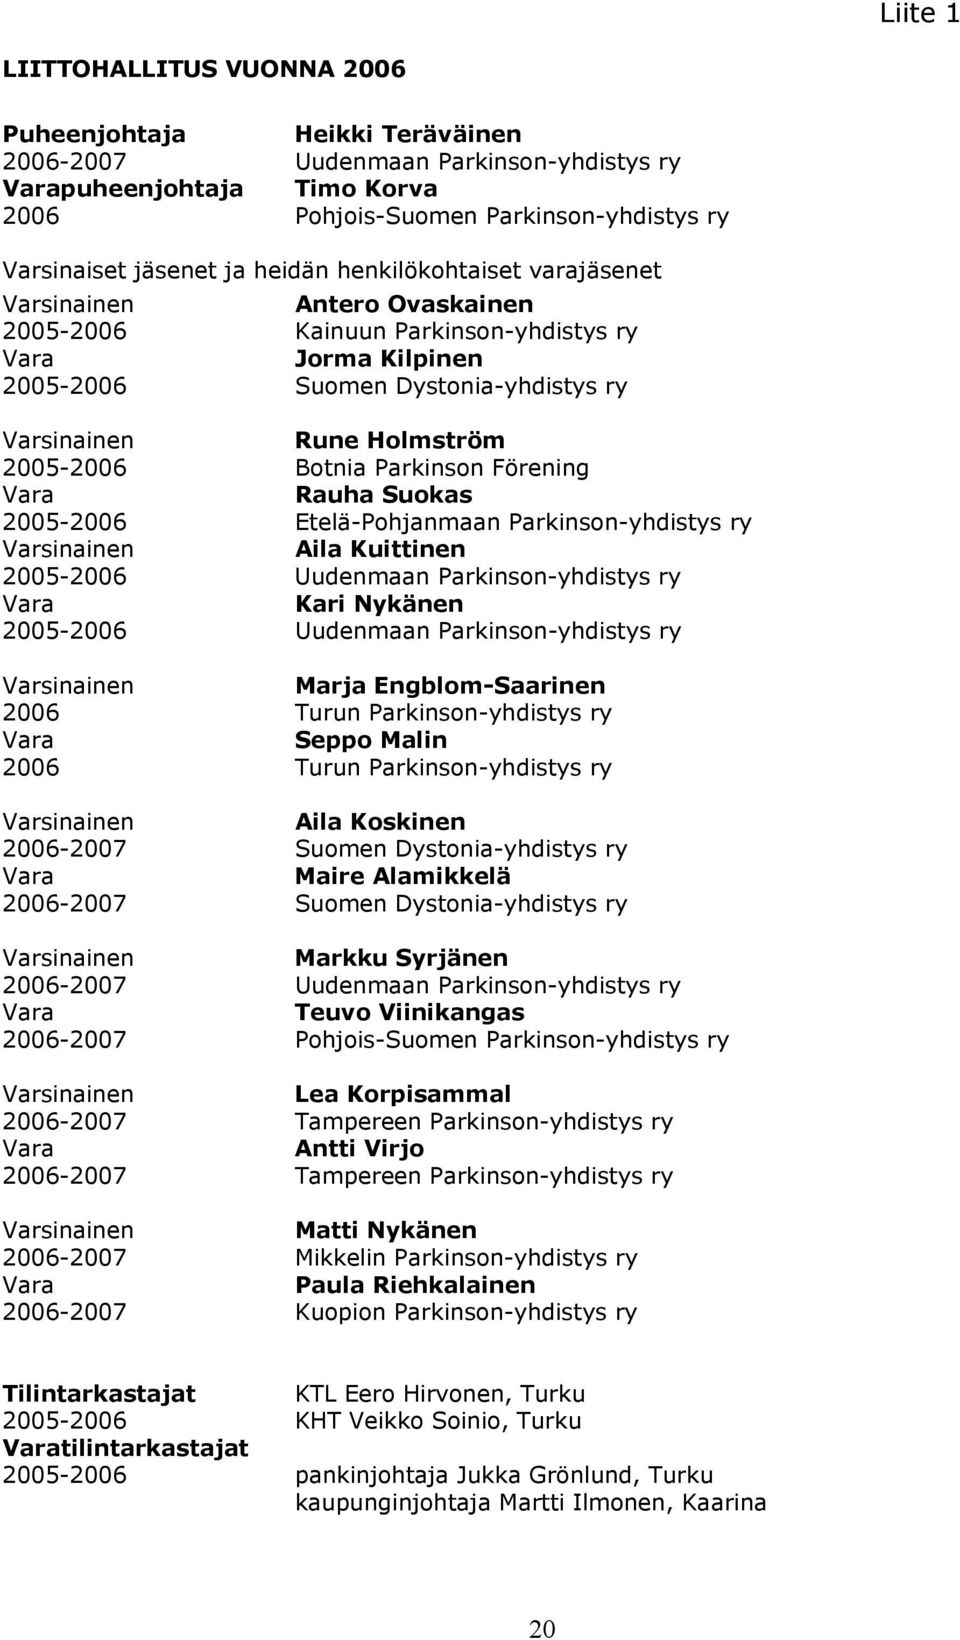 2005-2006 Botnia Parkinson Förening Vara Rauha Suokas 2005-2006 Etelä-Pohjanmaan Parkinson-yhdistys ry Varsinainen Aila Kuittinen 2005-2006 Uudenmaan Parkinson-yhdistys ry Vara Kari Nykänen 2005-2006